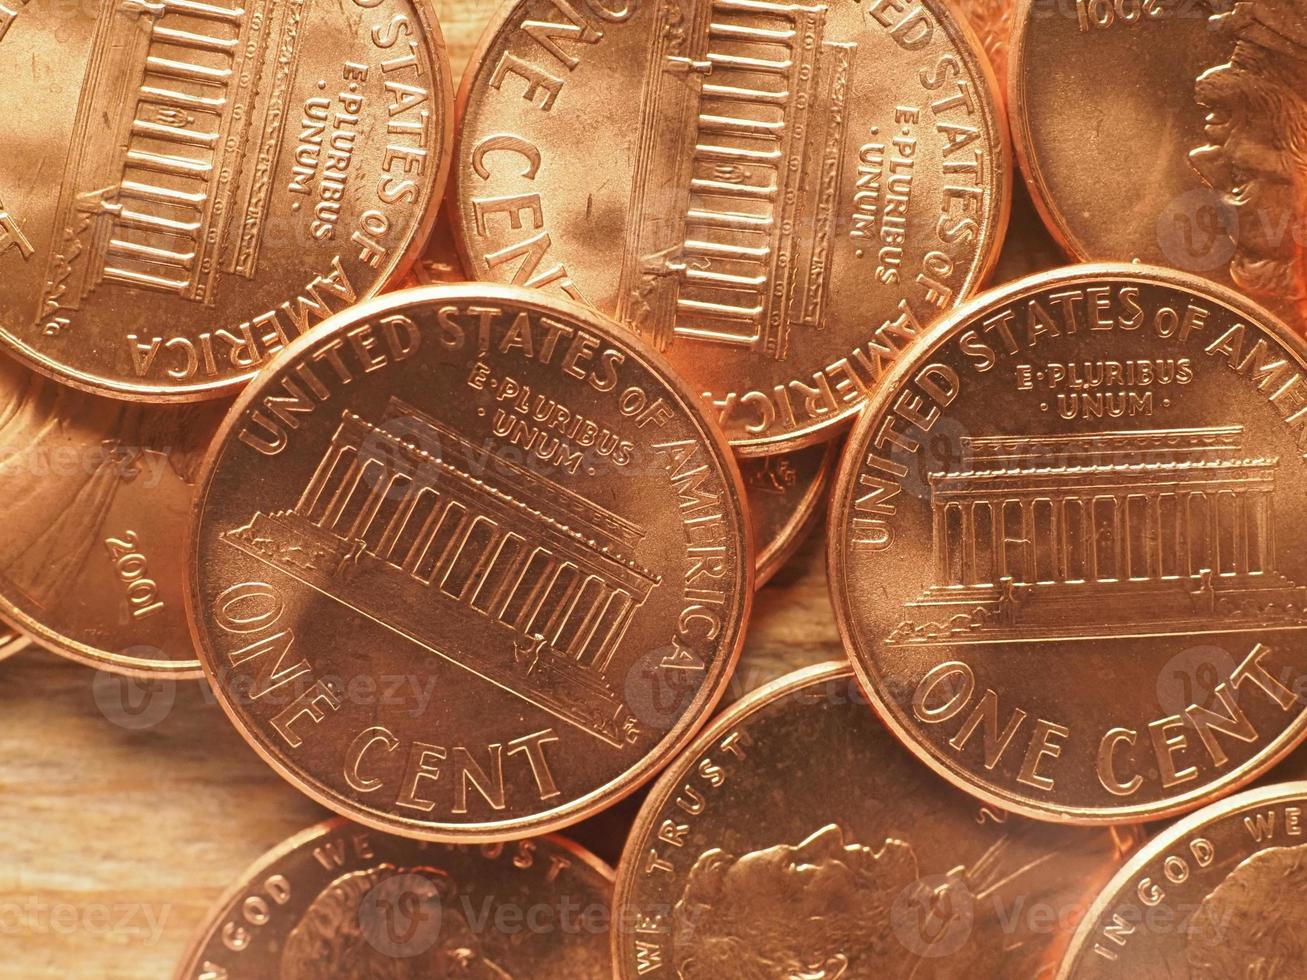 1-Cent-Münzen, Vereinigte Staaten foto